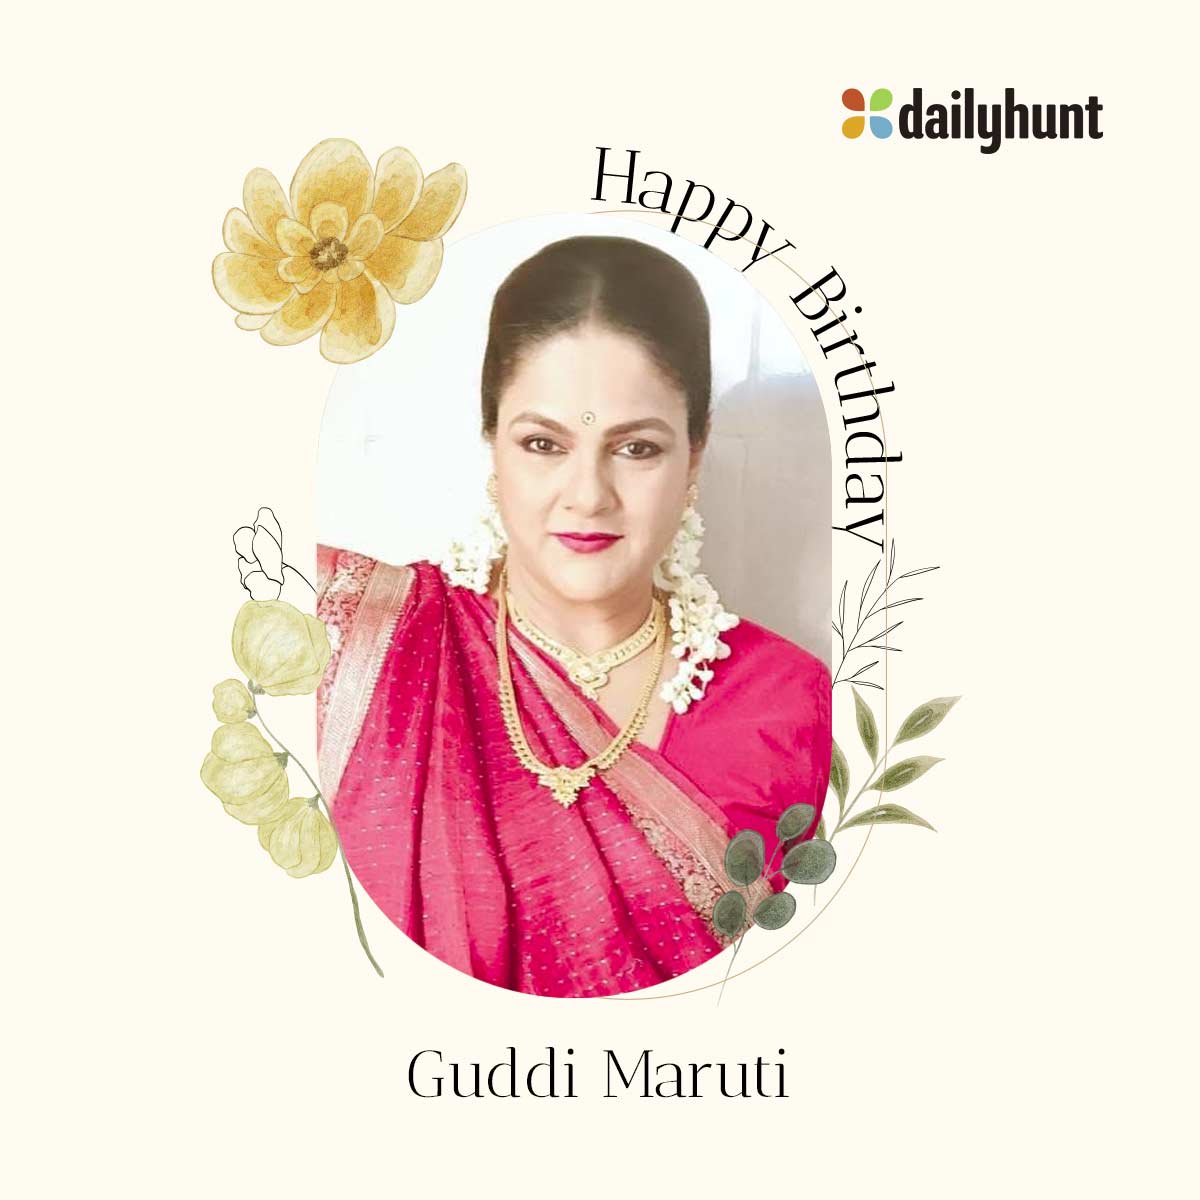 ਜਨਮਦਿਨ ਮੁਬਾਰਕ...✨🎂🎁🎈💕
#HAPPYBIRTHDAY #GuddiMaruti #HBDGuddiMaruti #GuddiMarutiBirthday #Dailyhunt #Birthday #HappyBirthdayGuddiMaruti